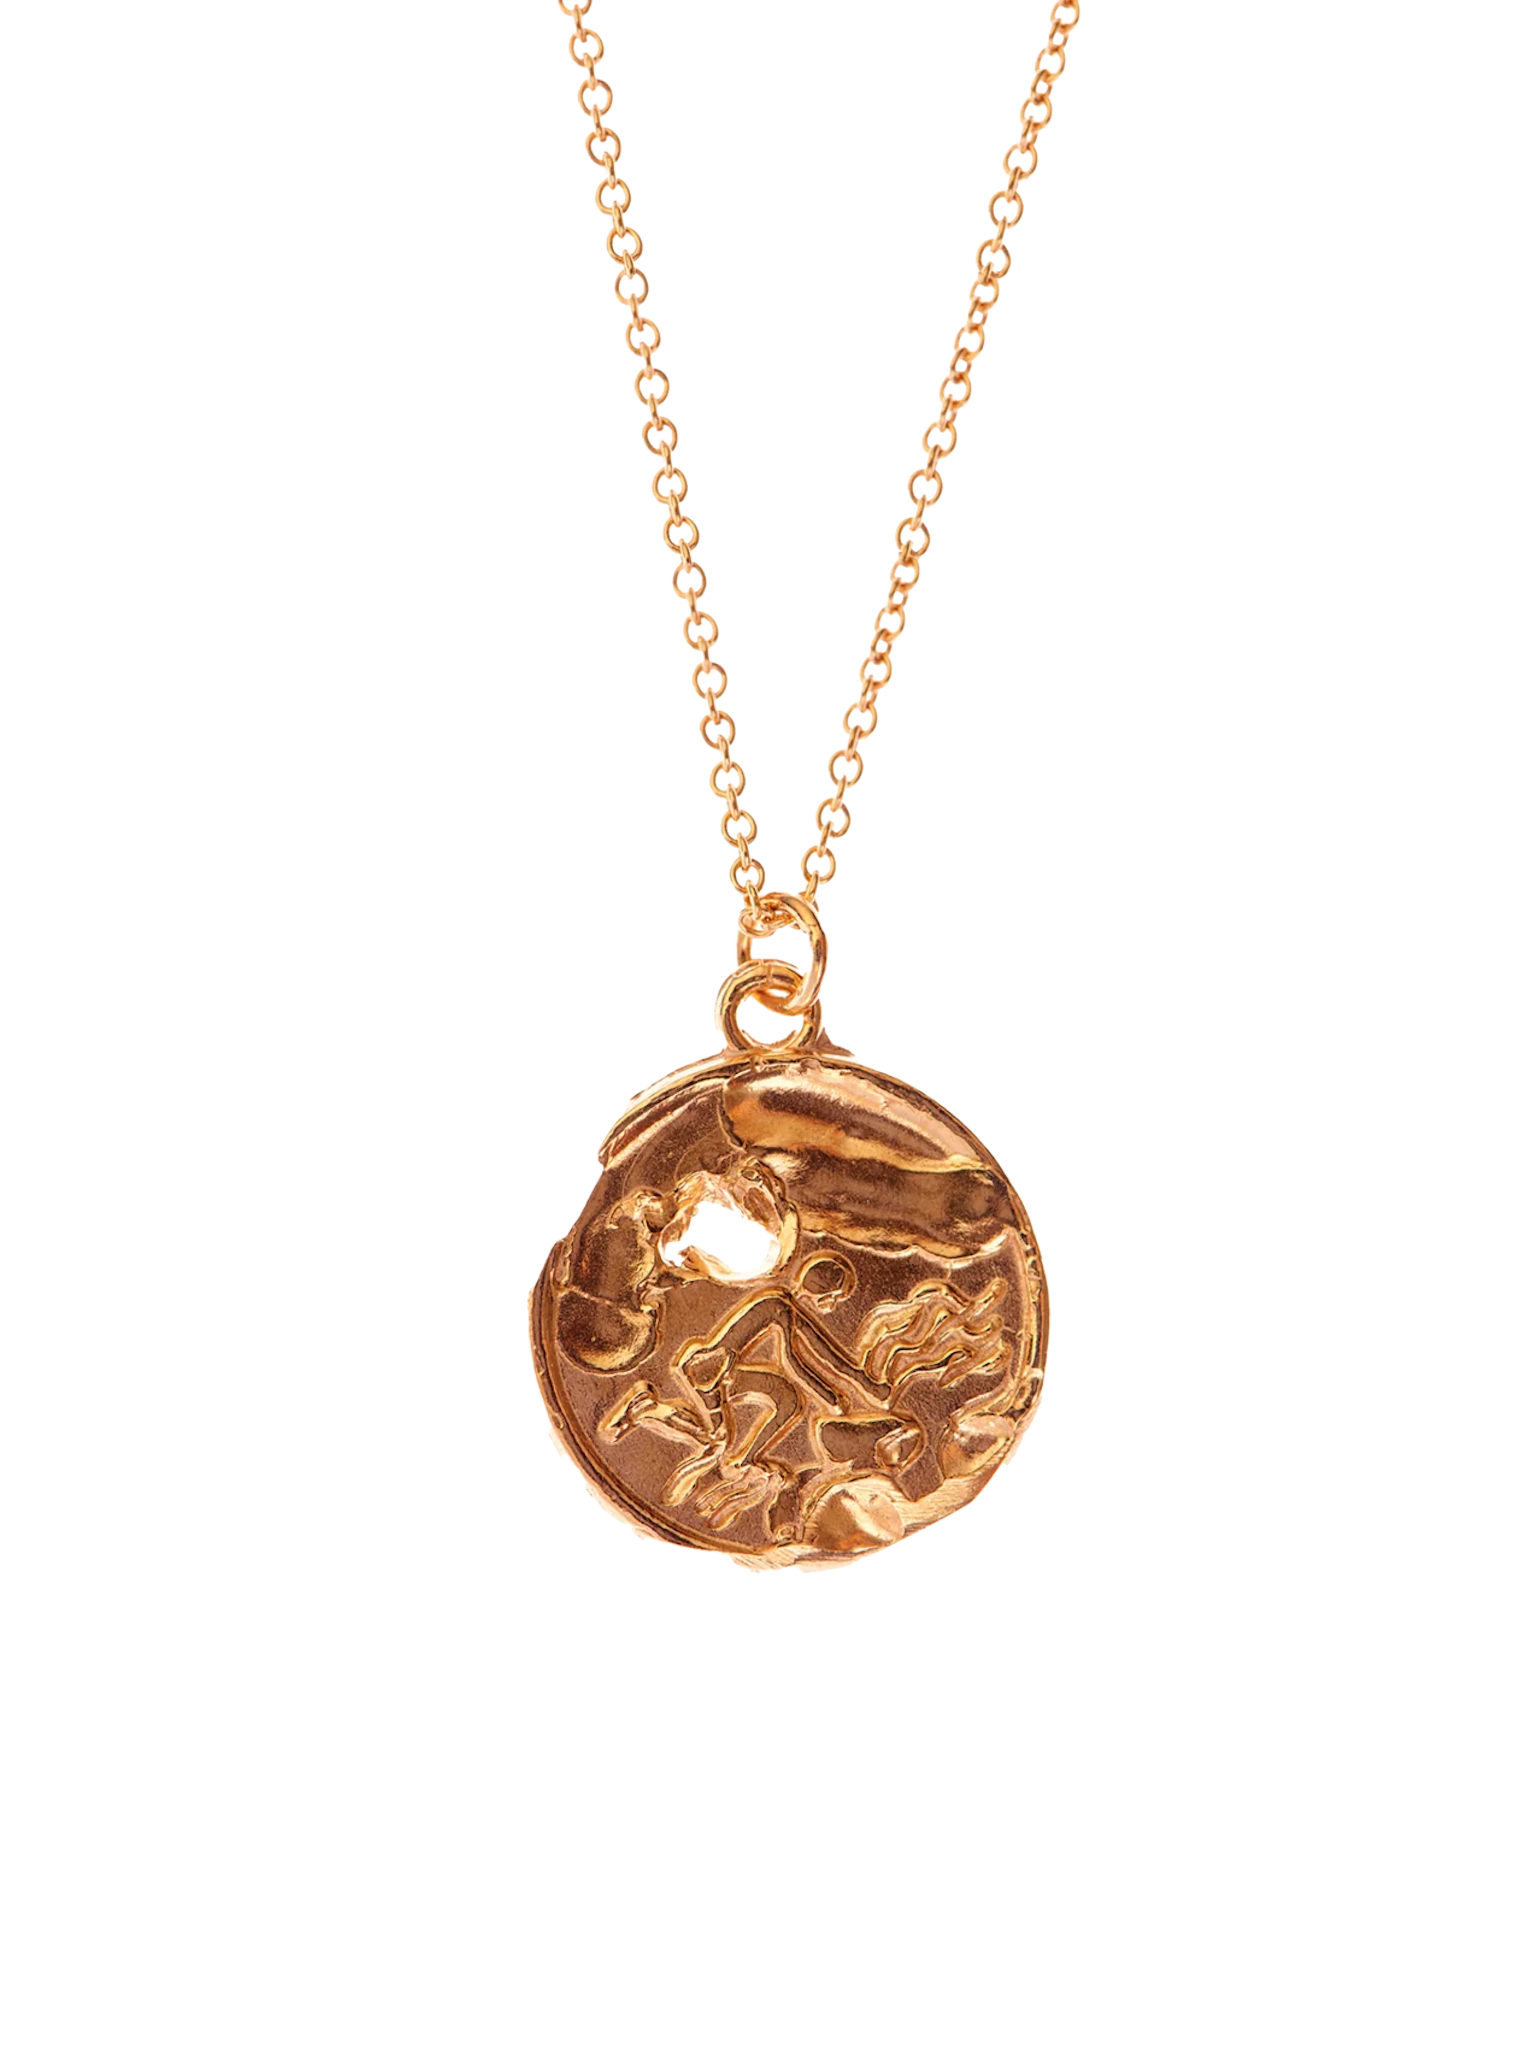 The aquarius medallion necklace